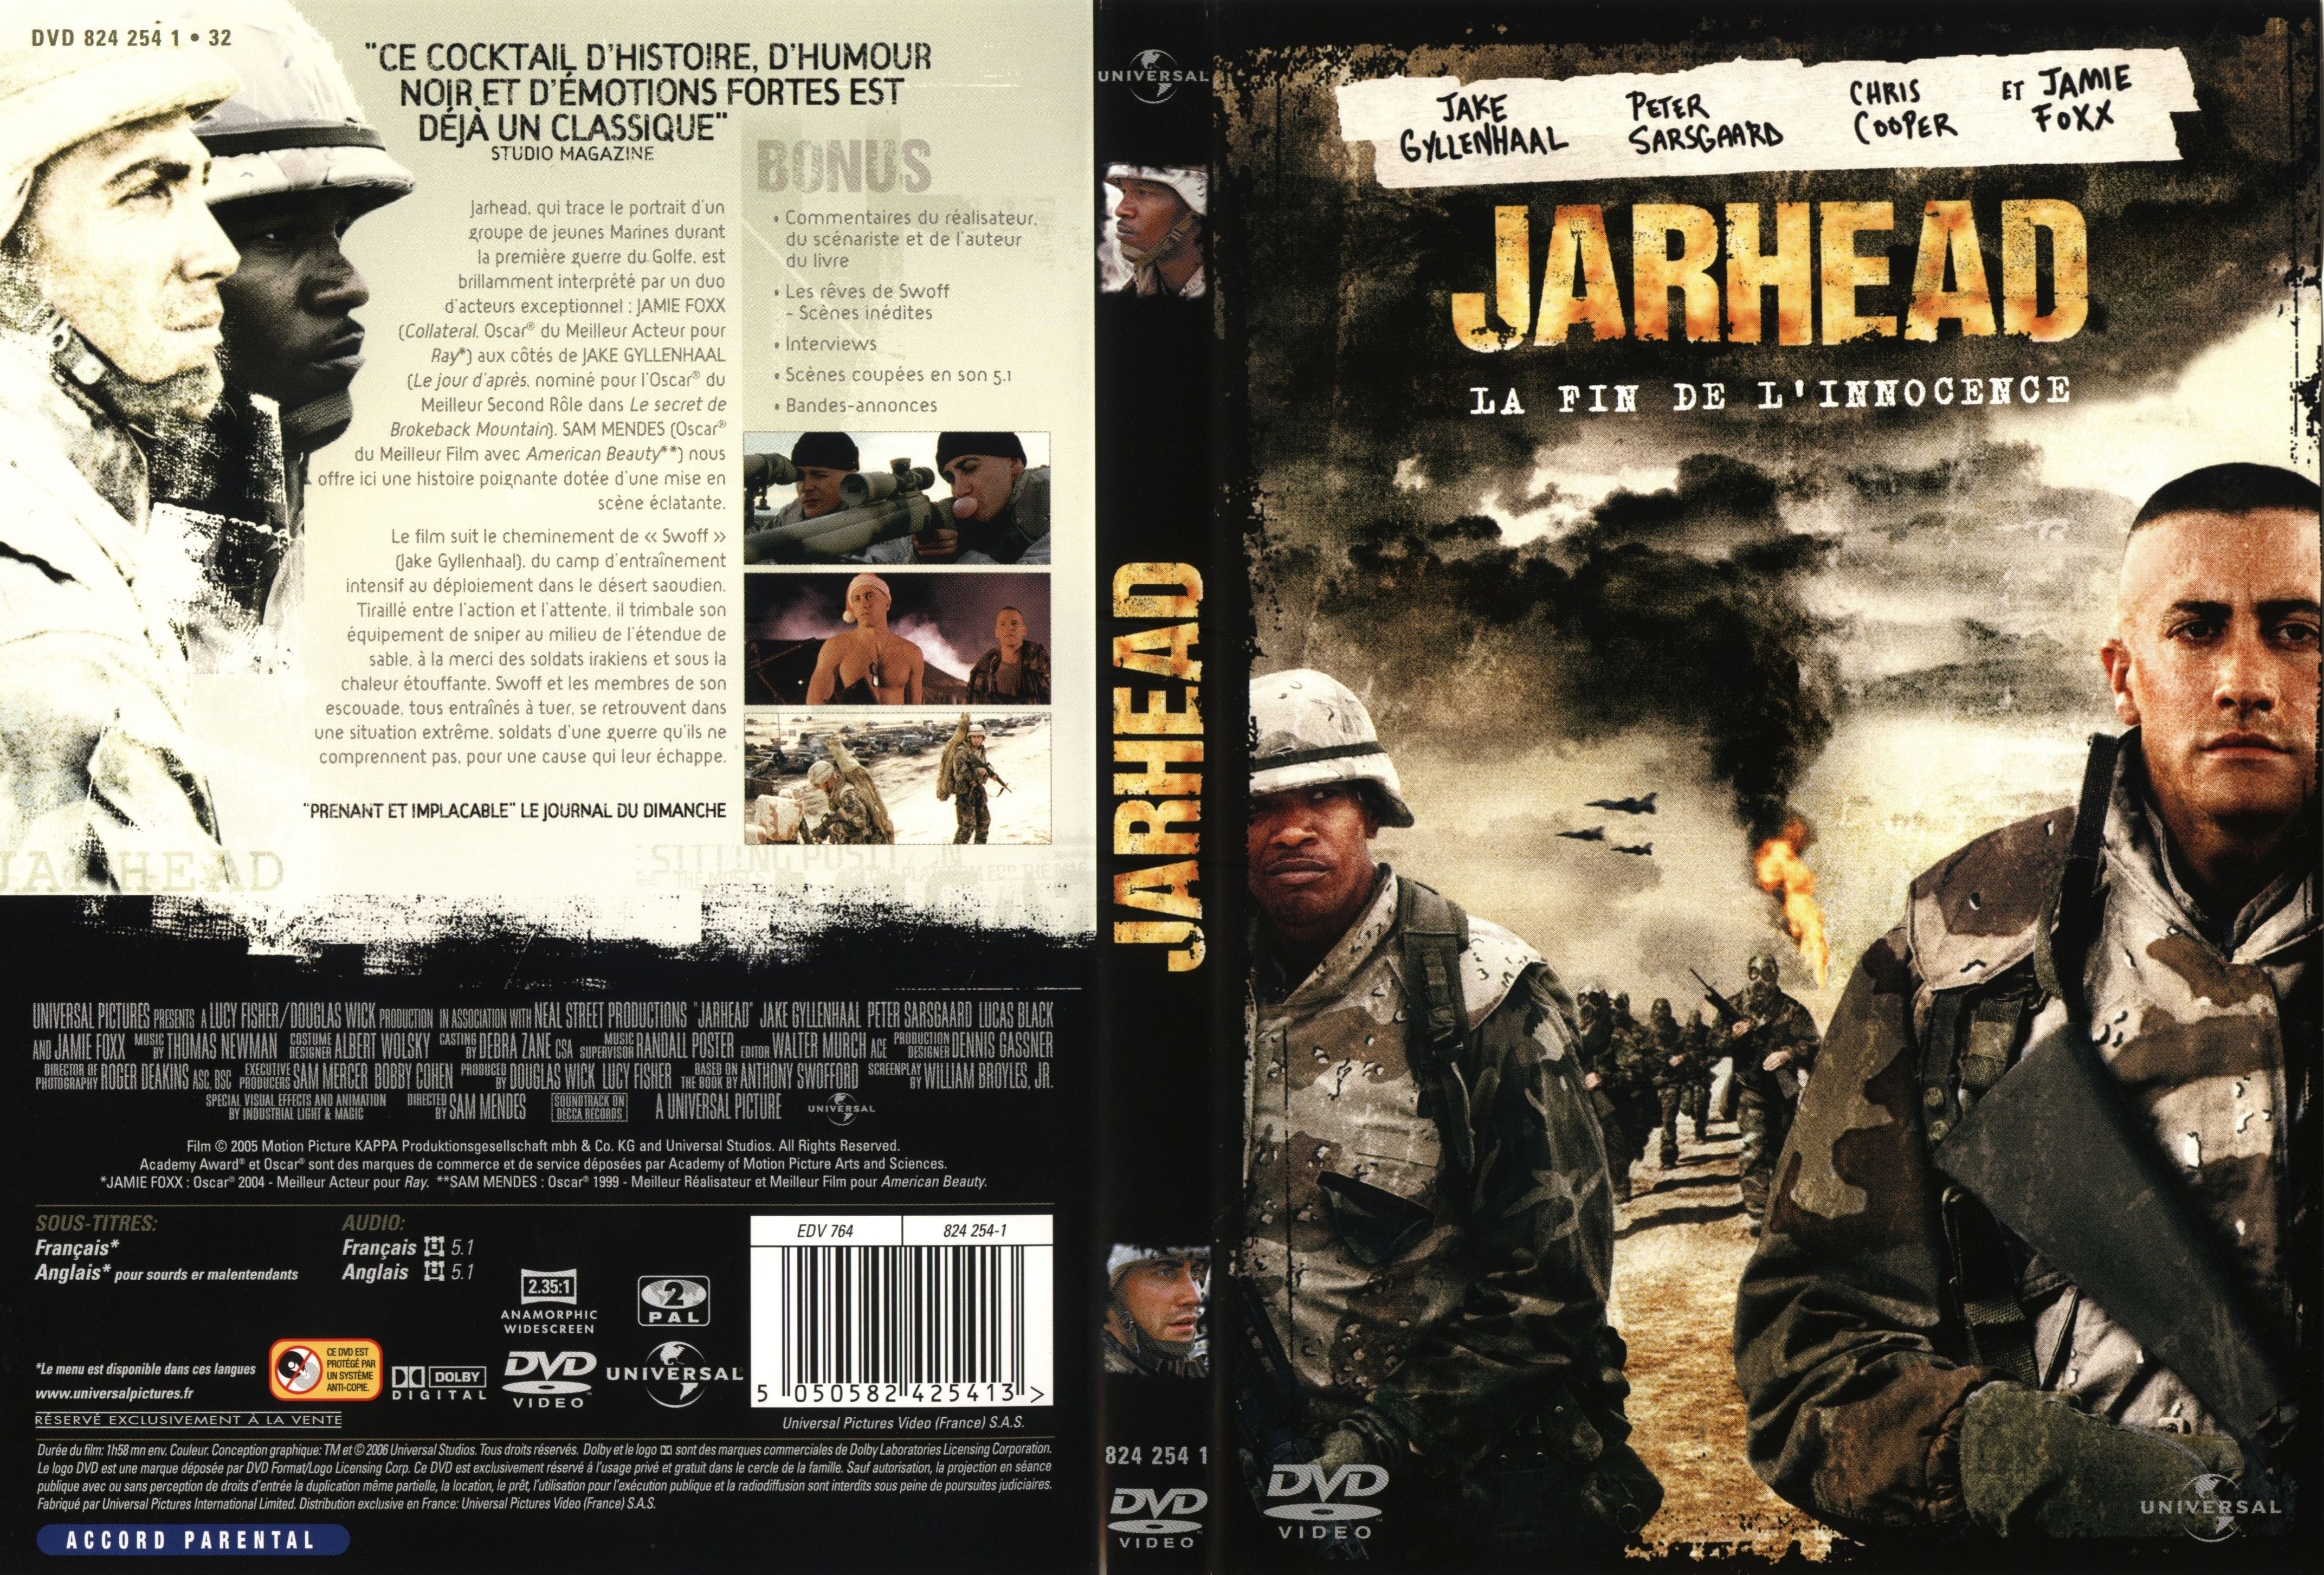 Jaquette DVD JARHEAD - CinémaPassion